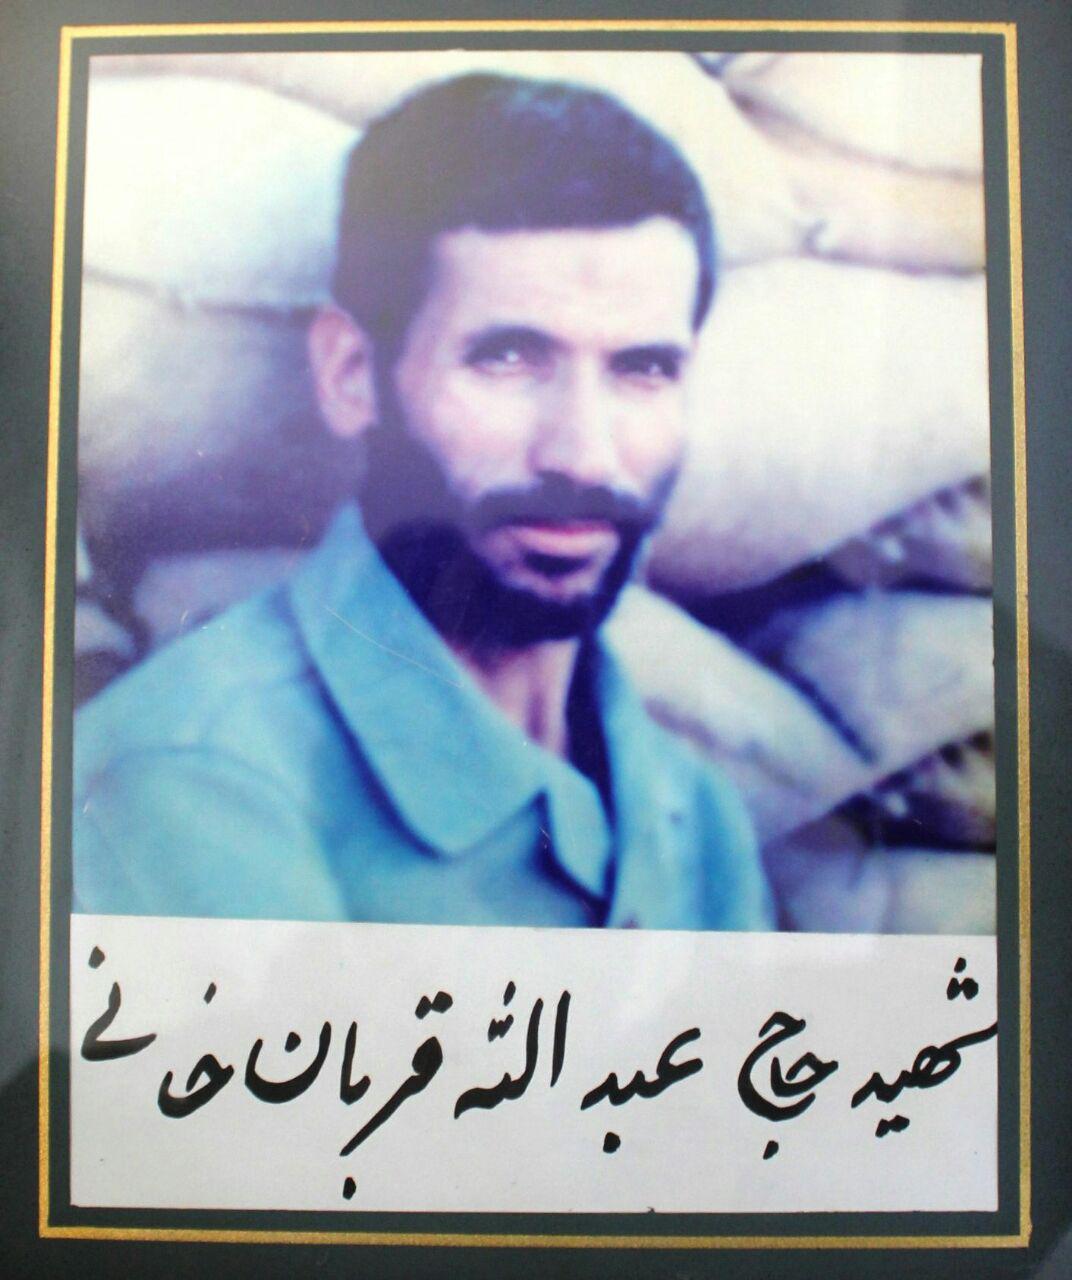 از کارمندی بانک تا امدادگری جبهه، سرنوشت شهید 40 ساله دفاع مقدس